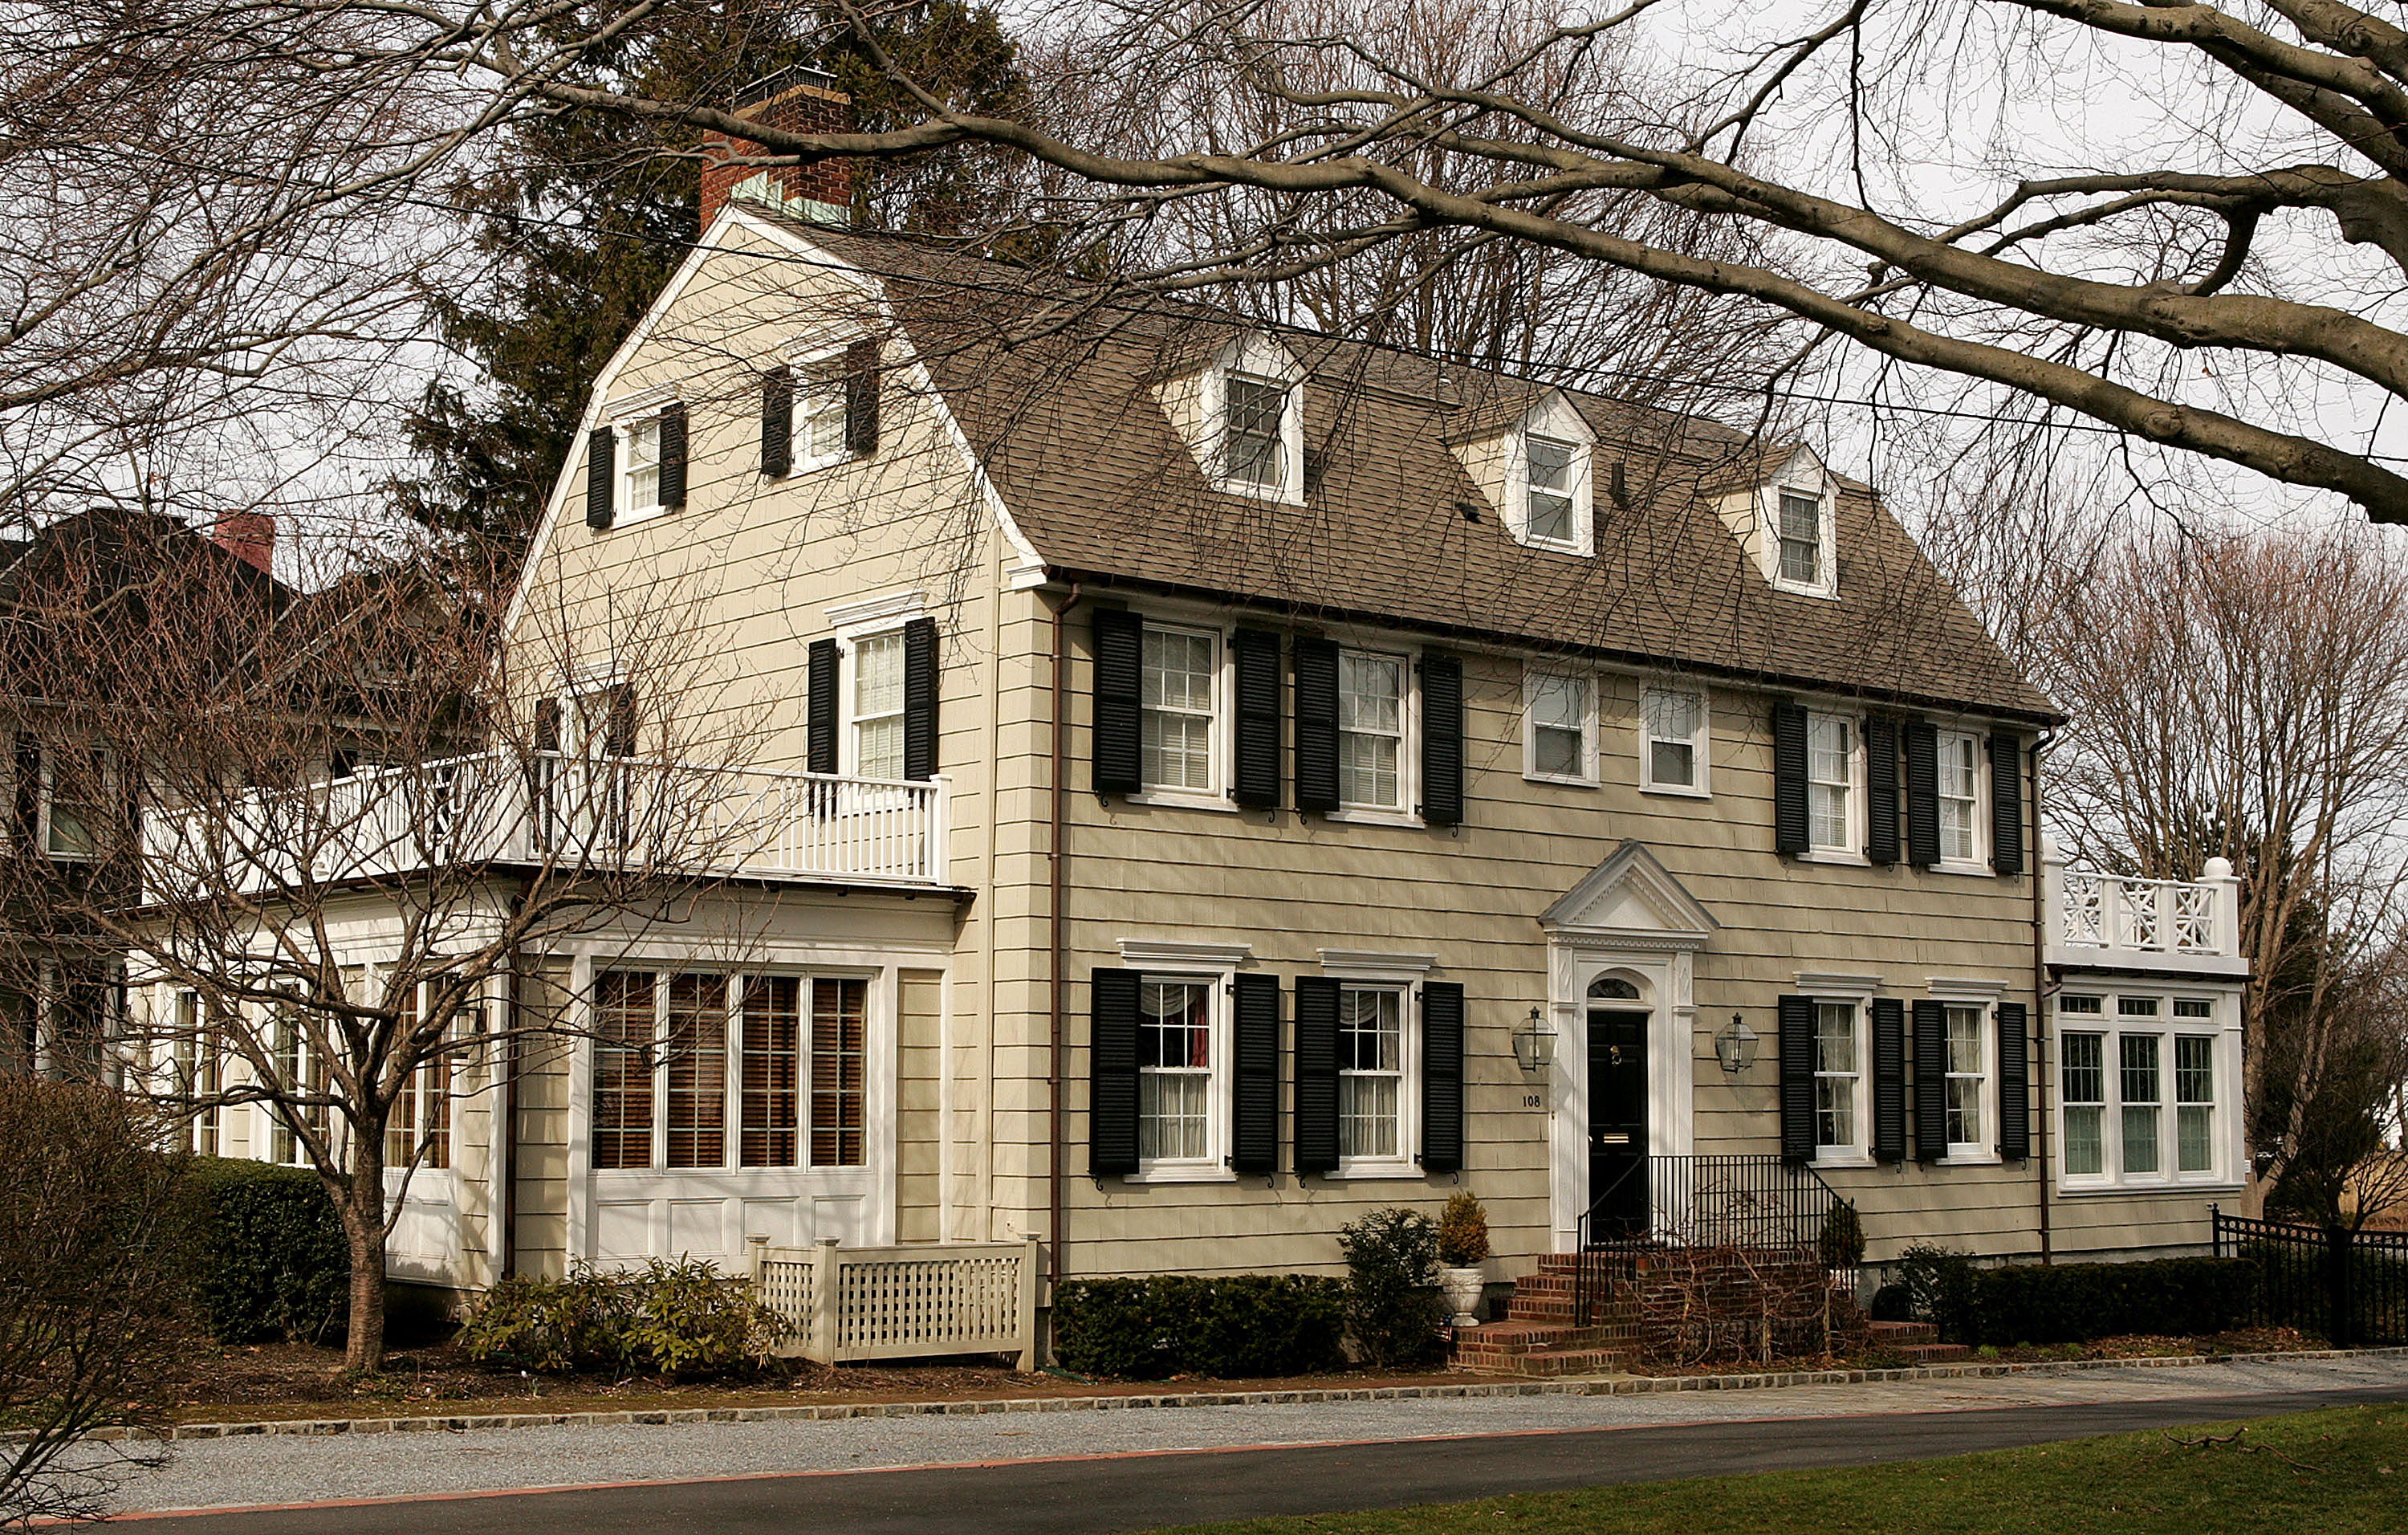 La casa colonial holandesa en Long Island ha inspirado muchos libros, películas, documentales y demás